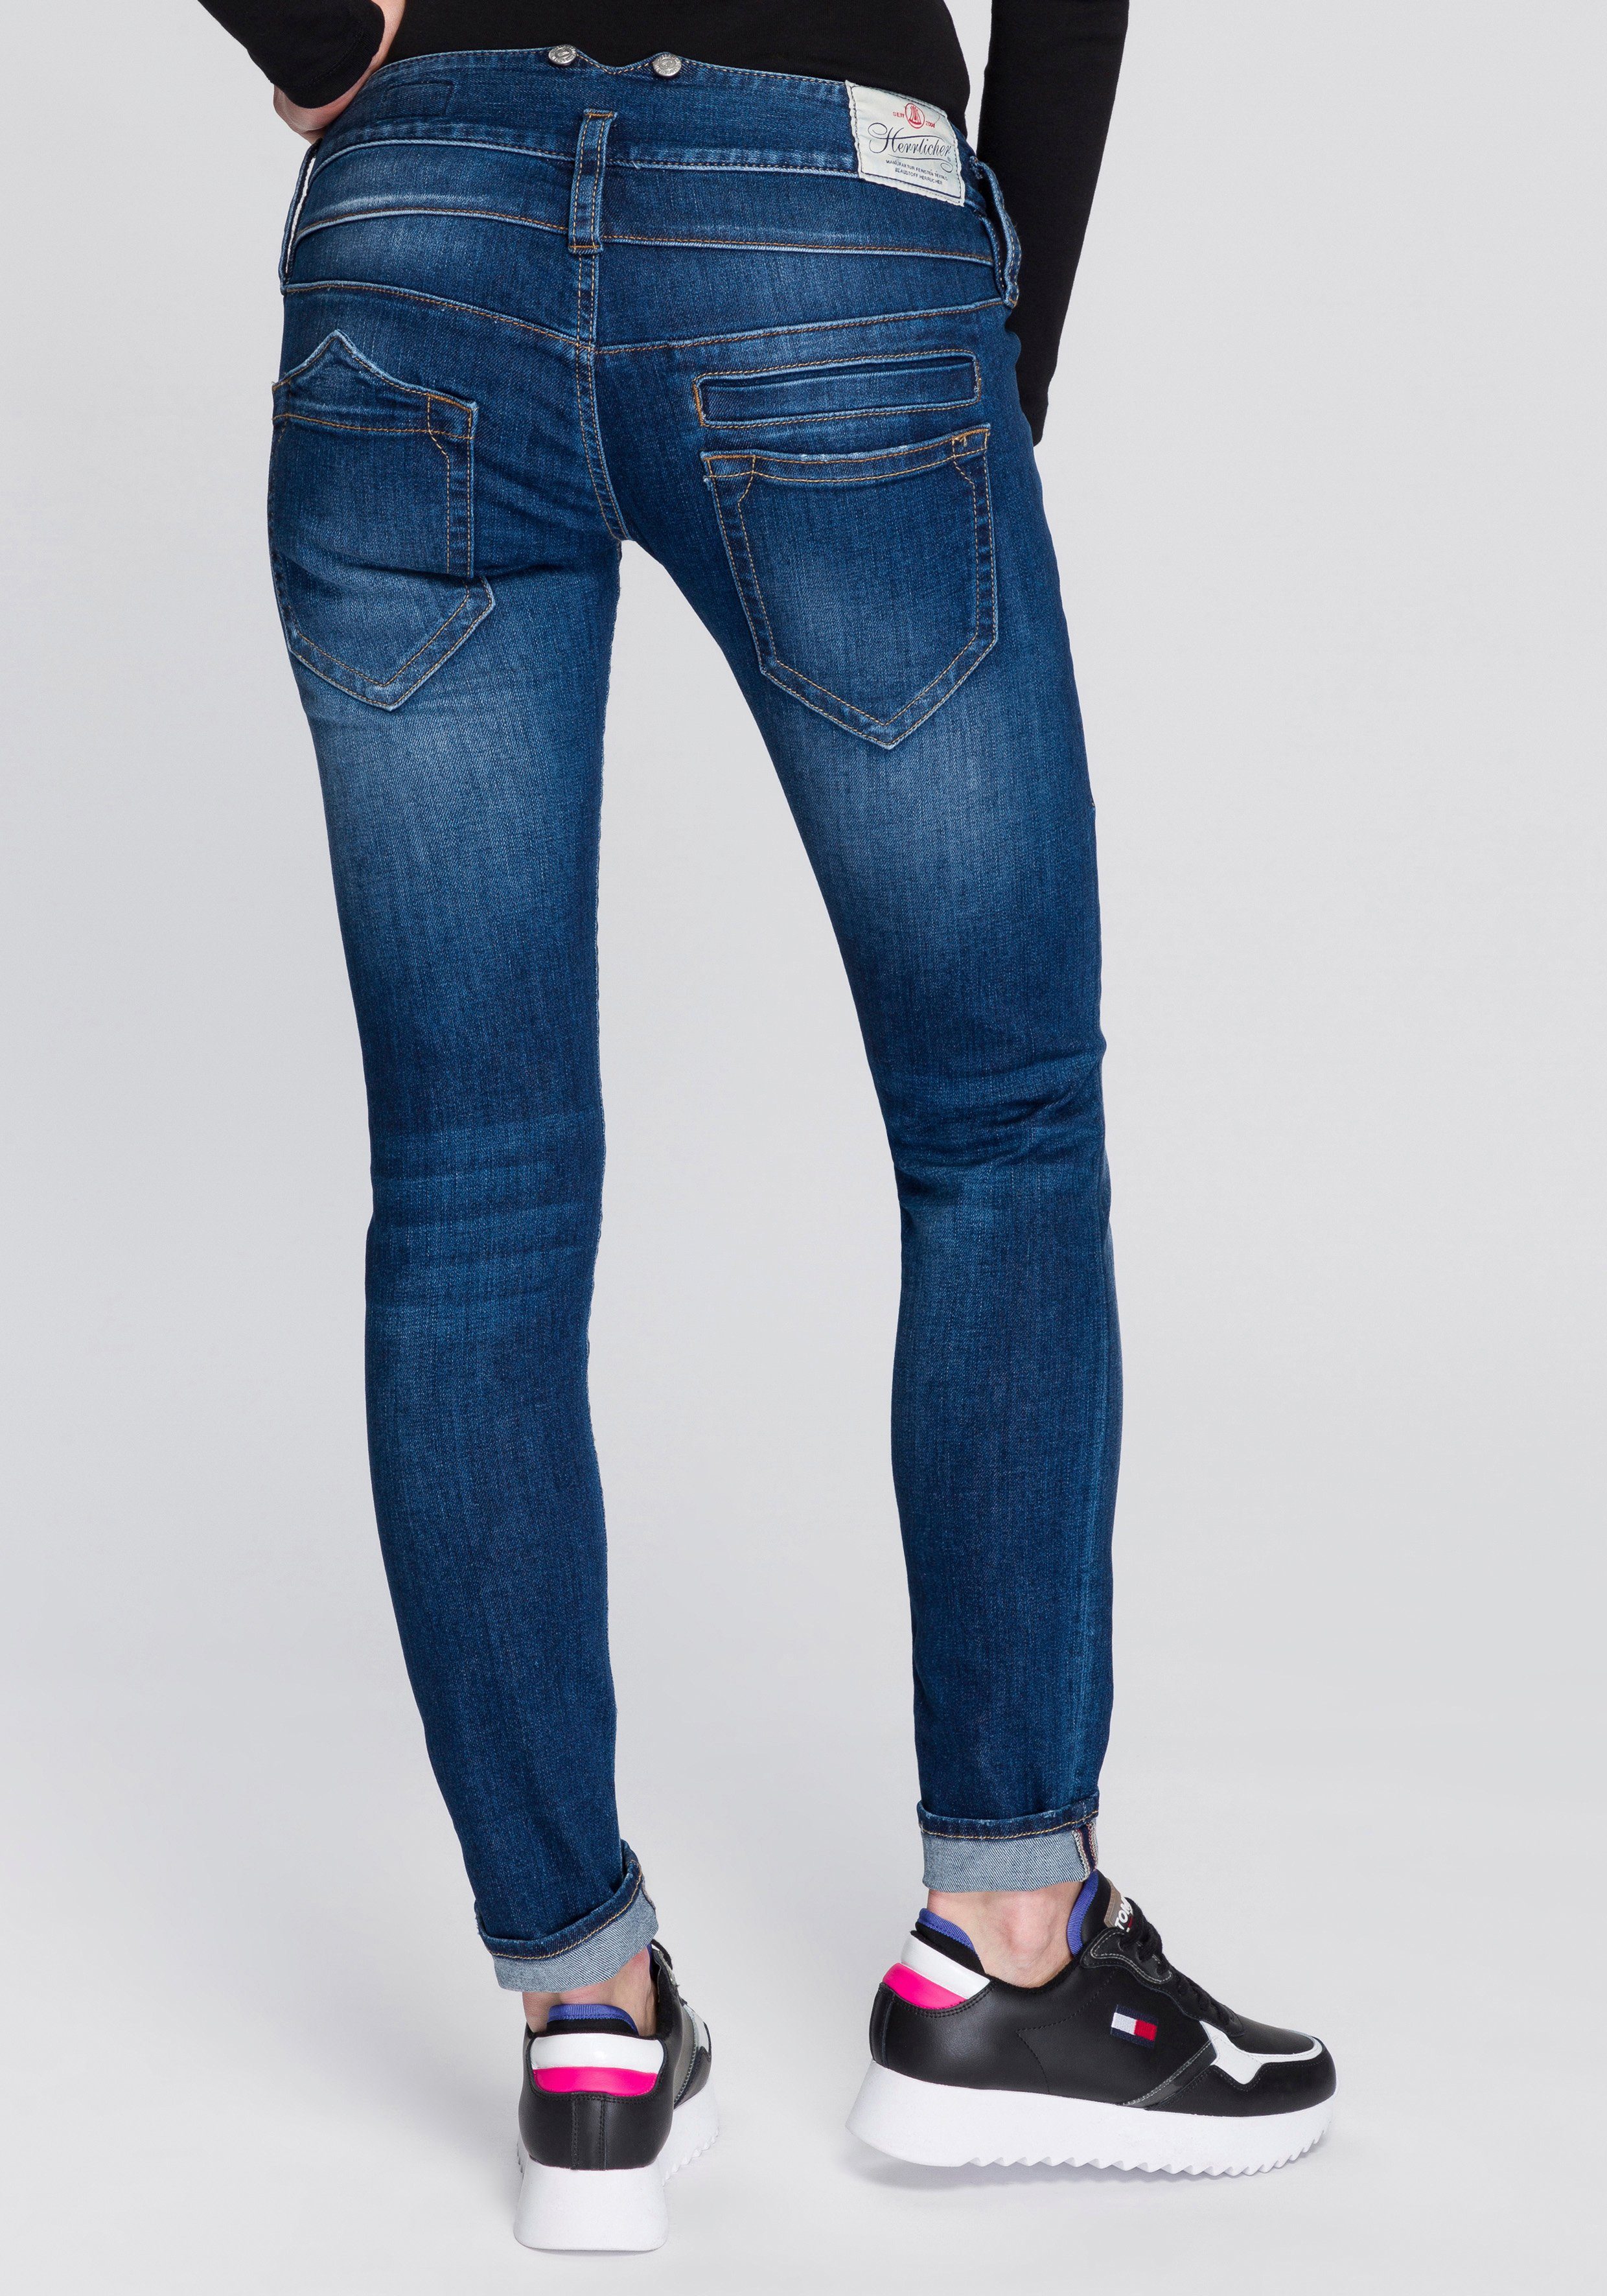 Herrlicher Slim-fit-Jeans »PITCH SLIM ORGANIC« umweltfreundlich dank  Kitotex Technology online kaufen | OTTO